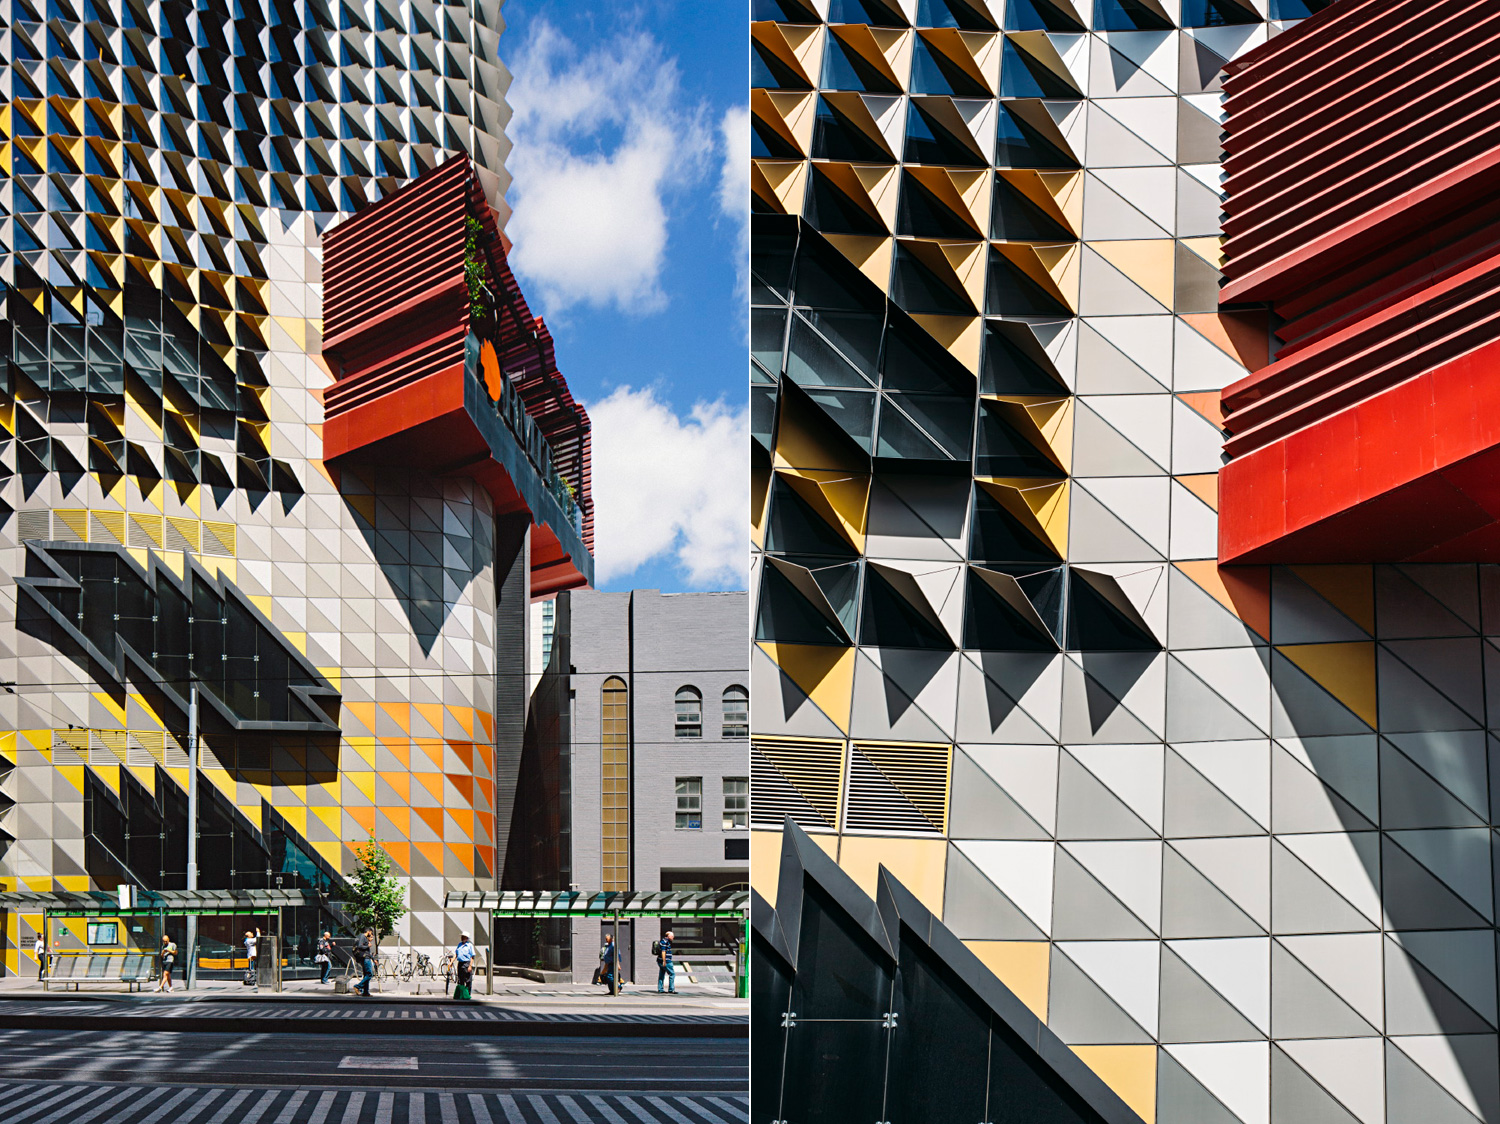 005-Melbourne-Architecture.jpg